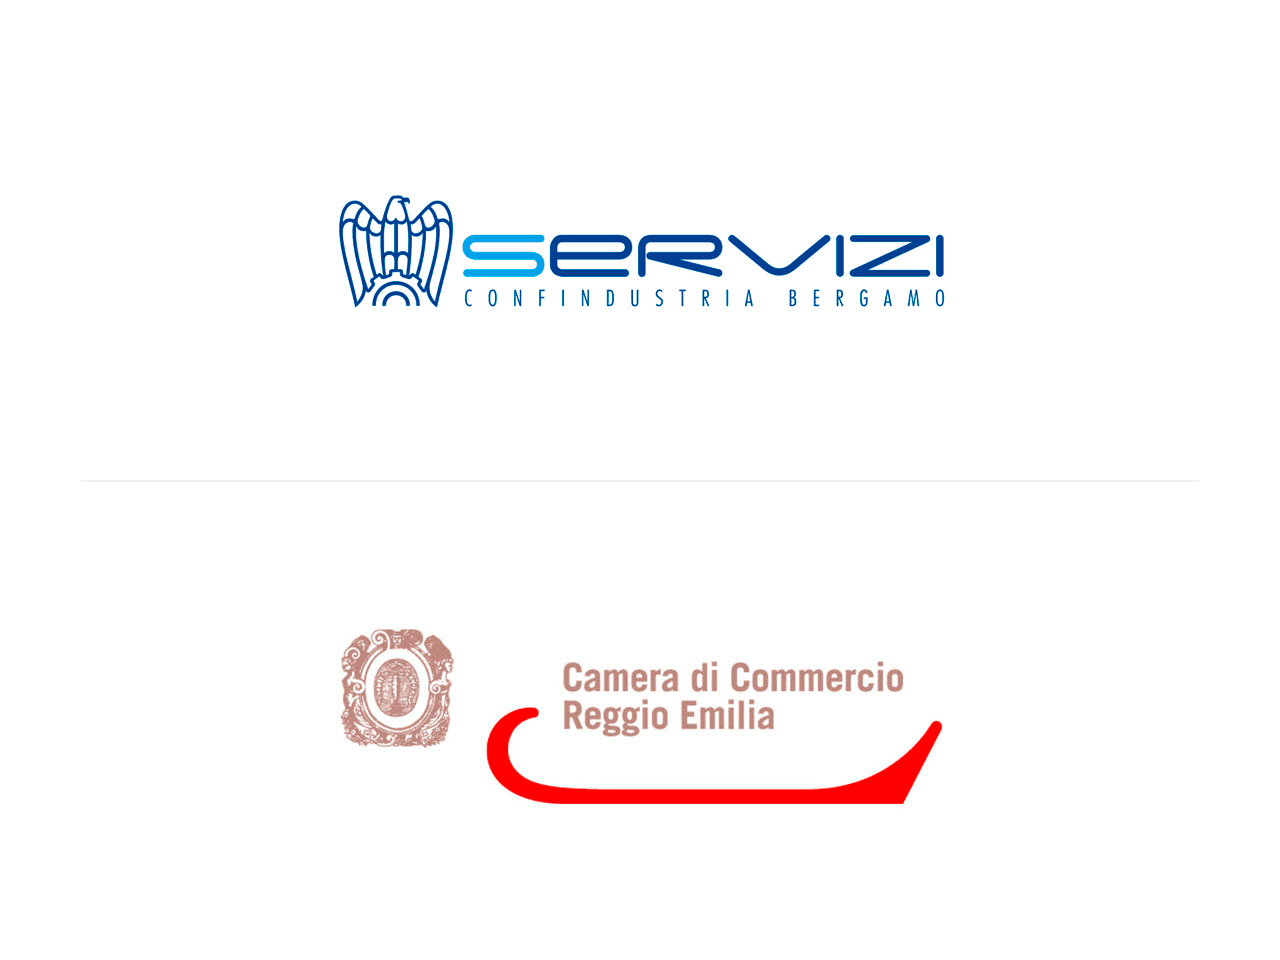 Servizi Confindustria Bergamo-cciaa-re logo